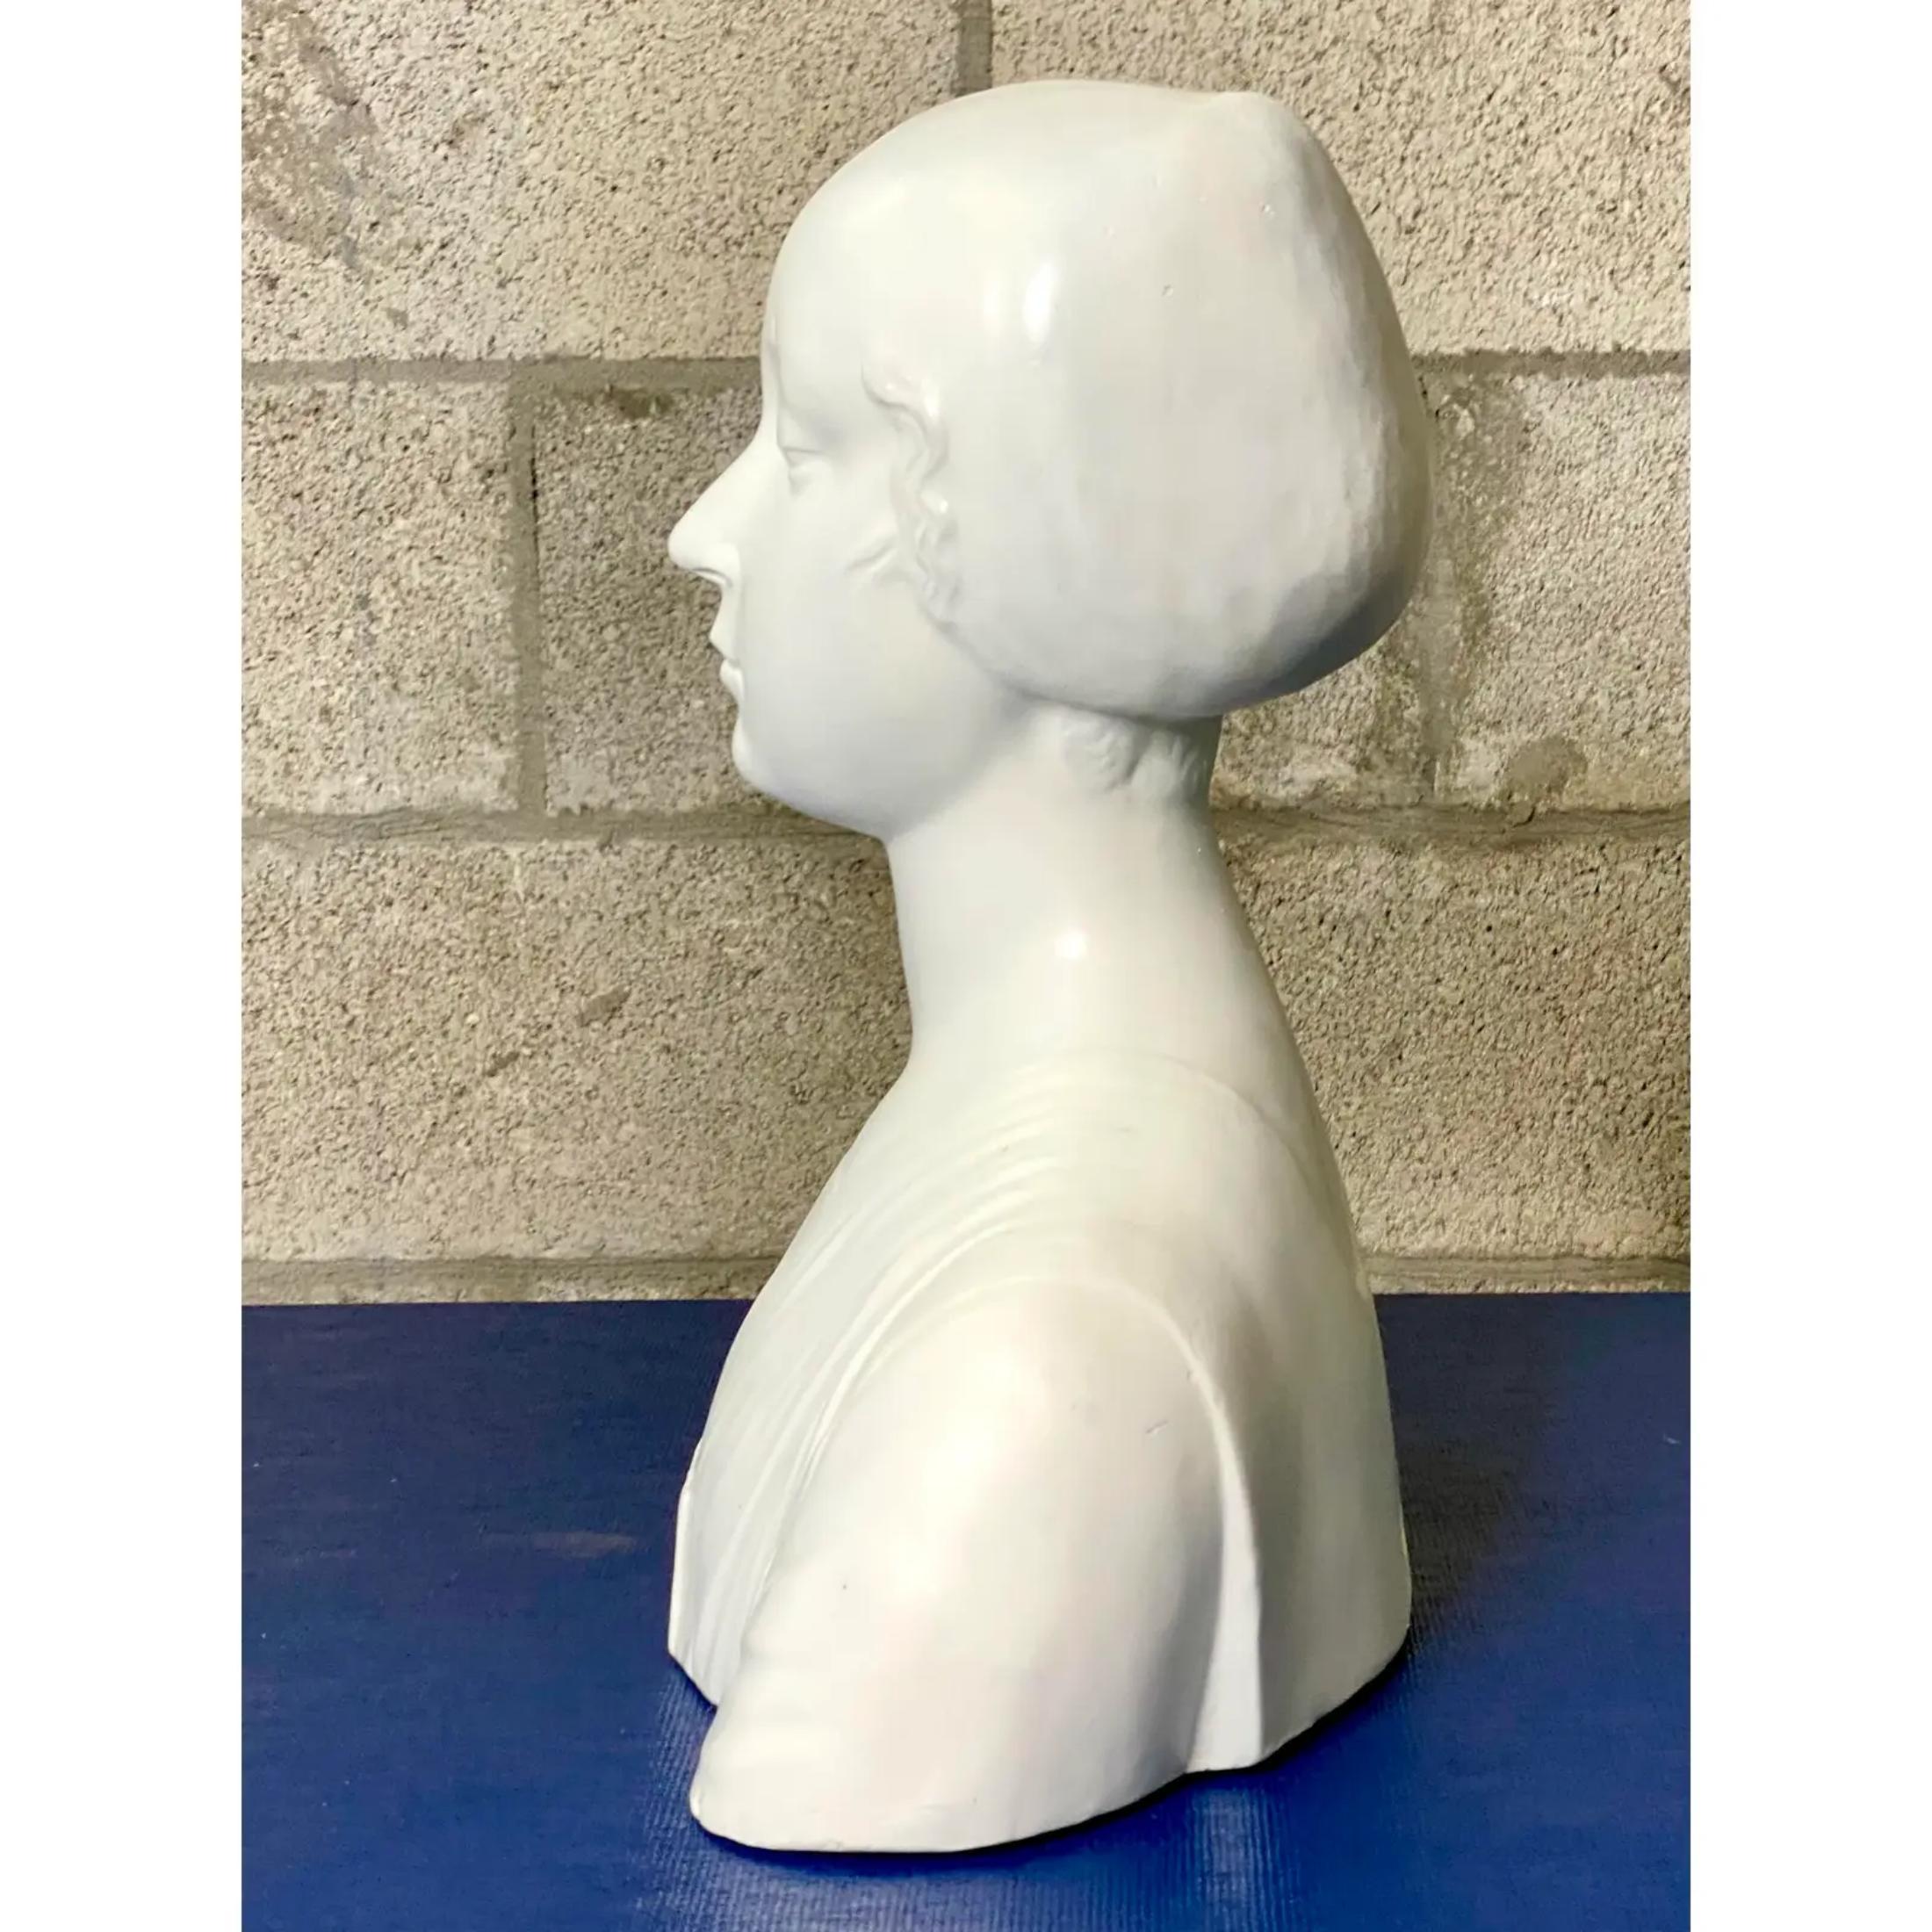 Magnifique buste de femme en plâtre vintage. Sculpture simple et chic. Marque du fabricant au dos. Acquis auprès d'une succession Deal.